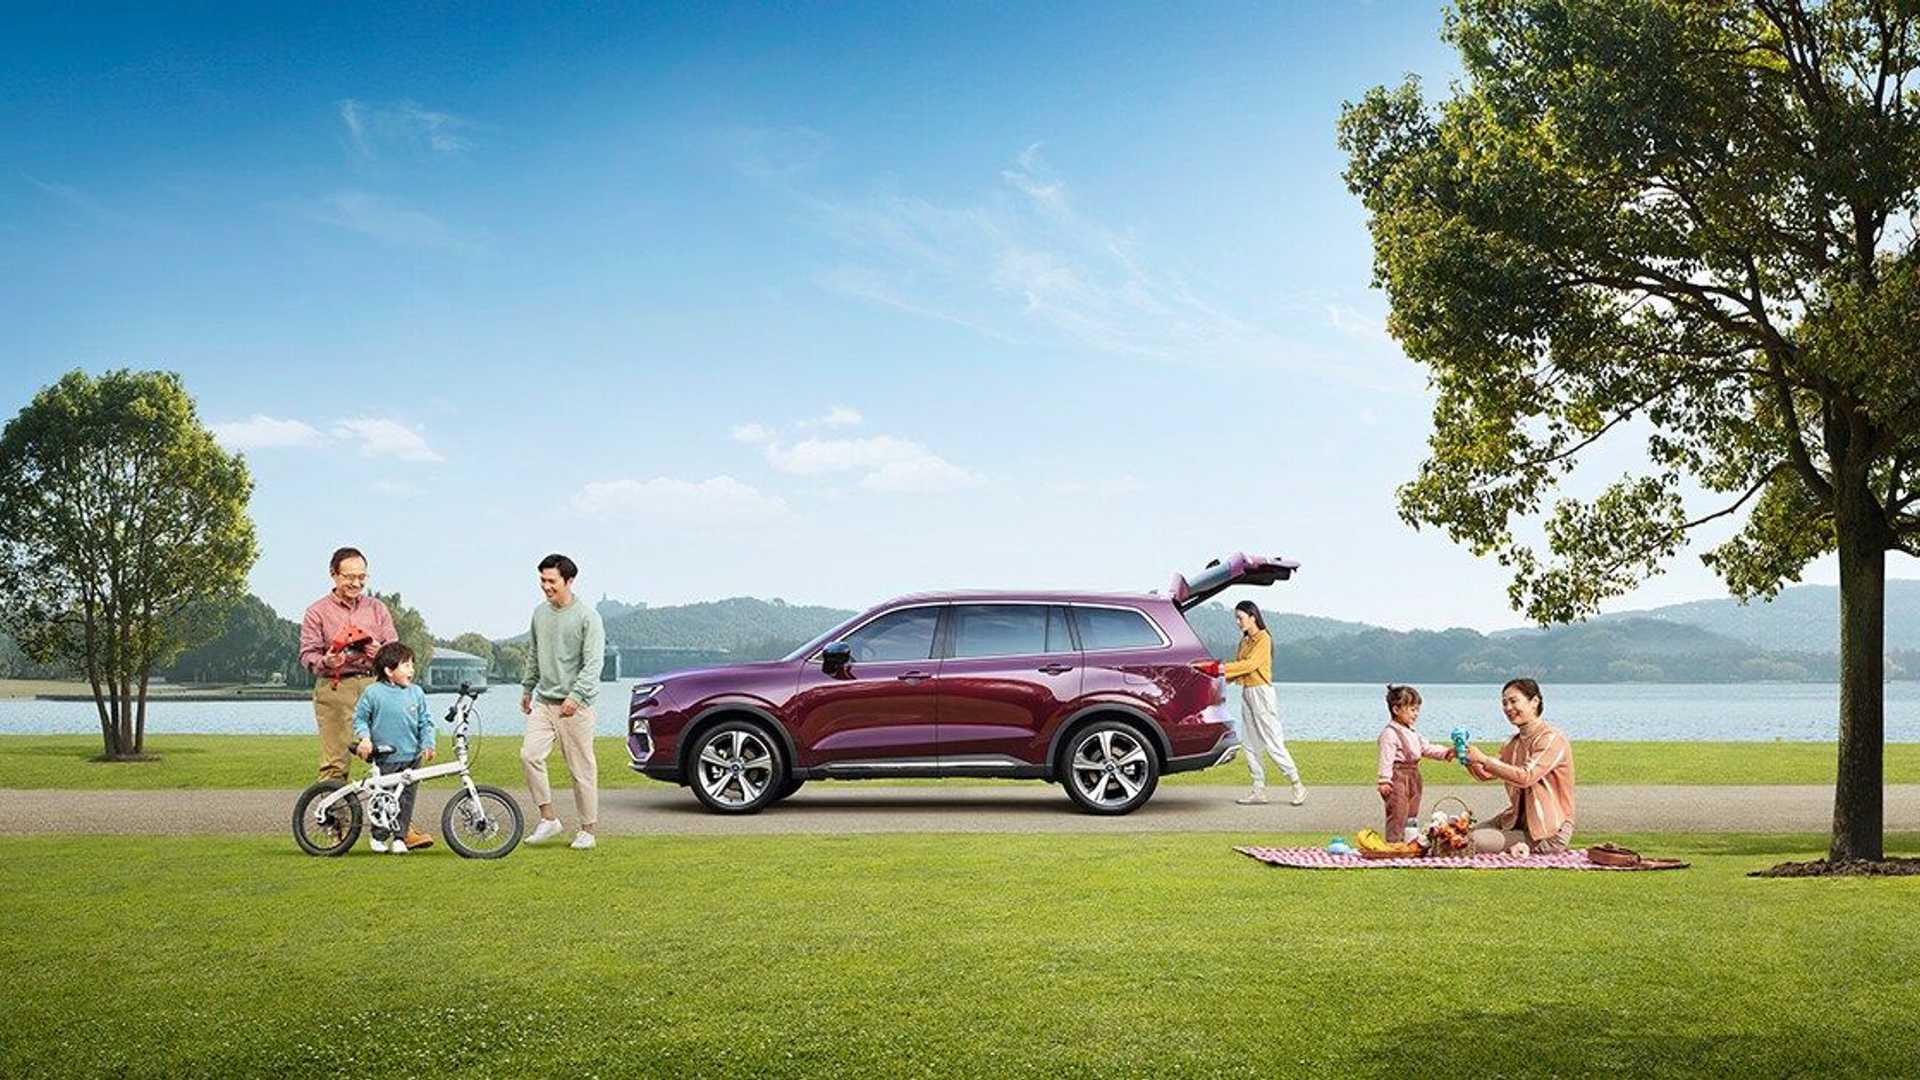 نمای جانبی شاسی بلند فورد اکویتور / Ford Equator SUV رنگ بنفش در کنار درخت با منظره آسمان آبی